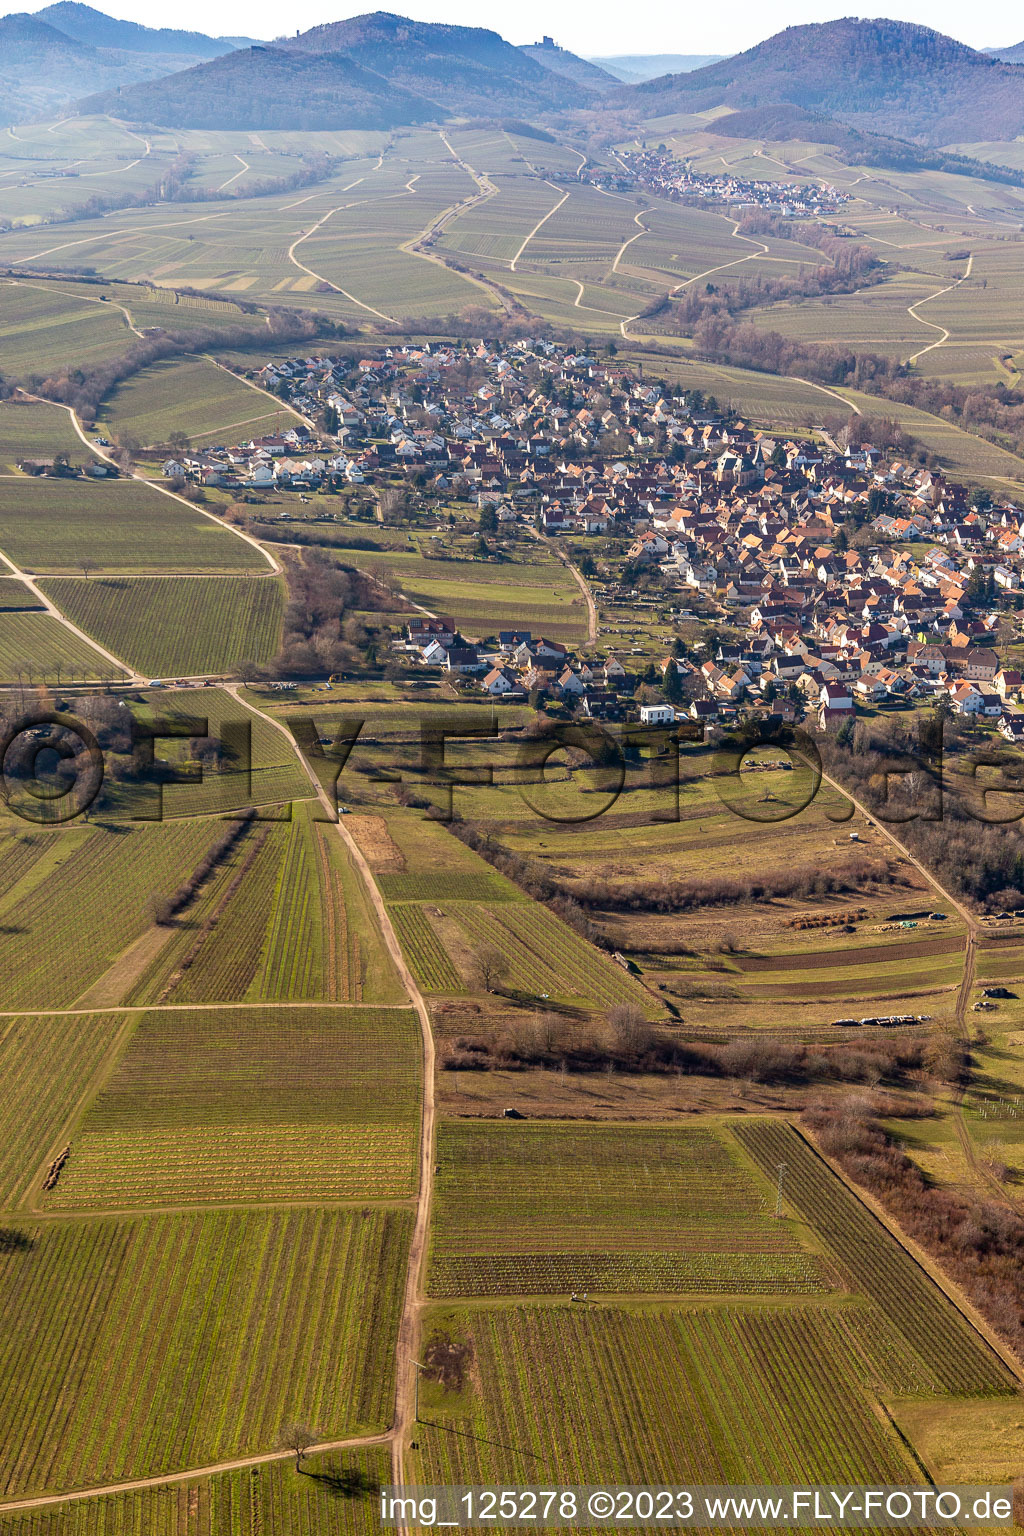 Ortsteil Arzheim in Landau in der Pfalz im Bundesland Rheinland-Pfalz, Deutschland aus der Luft betrachtet